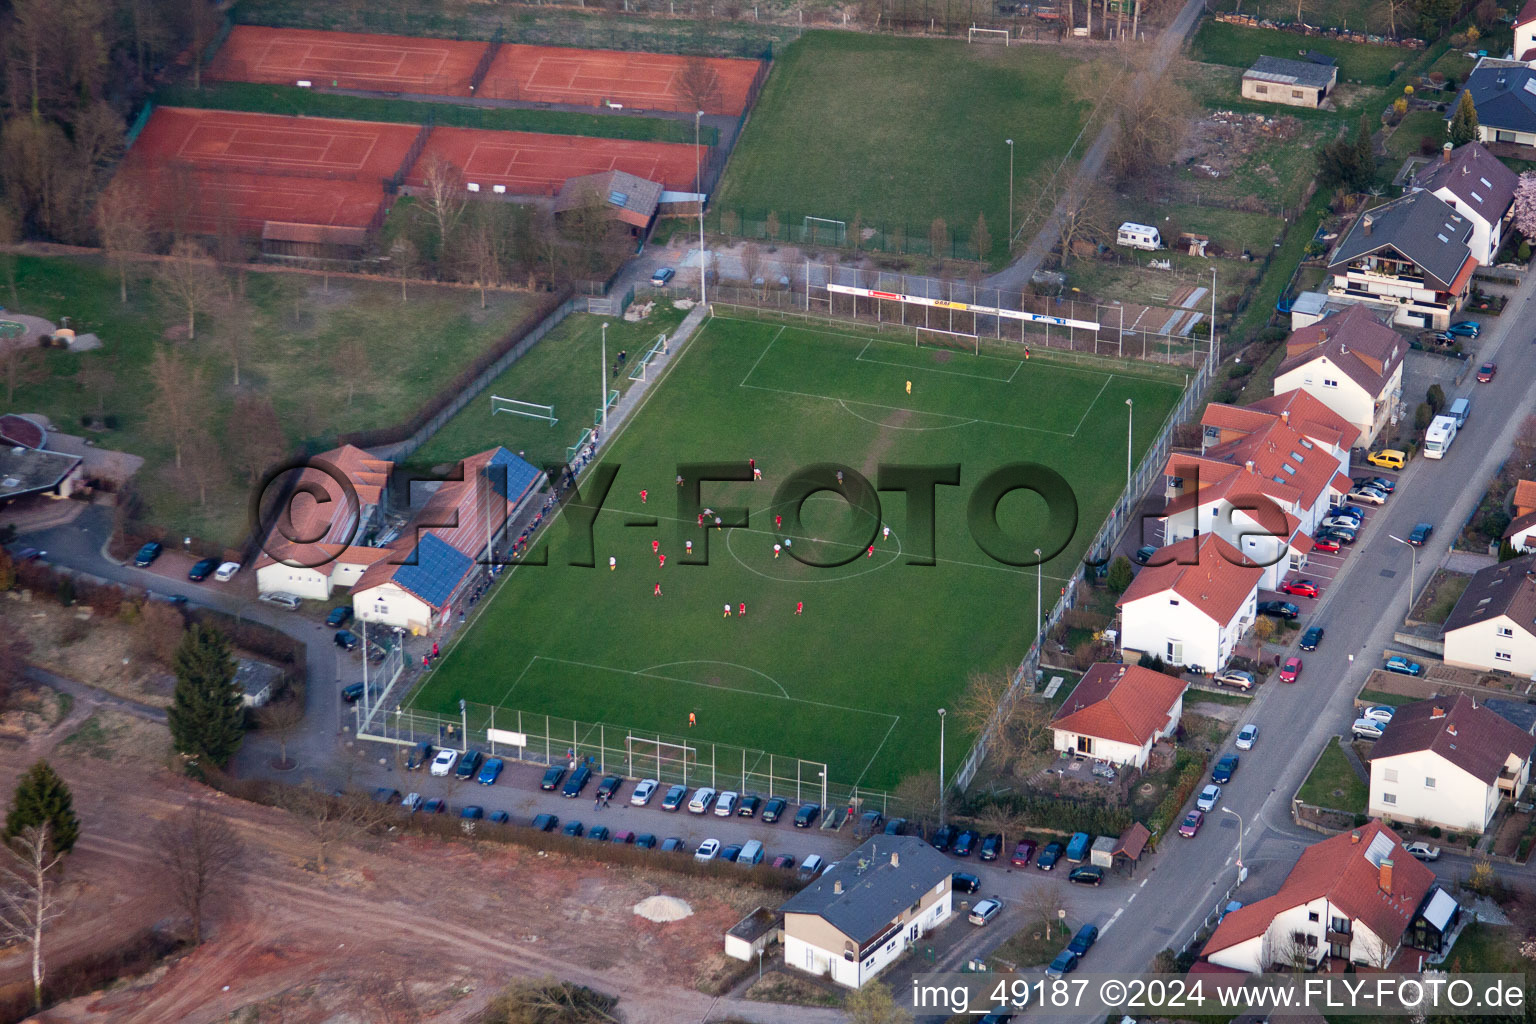 Terrains de sport à le quartier Ingenheim in Billigheim-Ingenheim dans le département Rhénanie-Palatinat, Allemagne vue du ciel